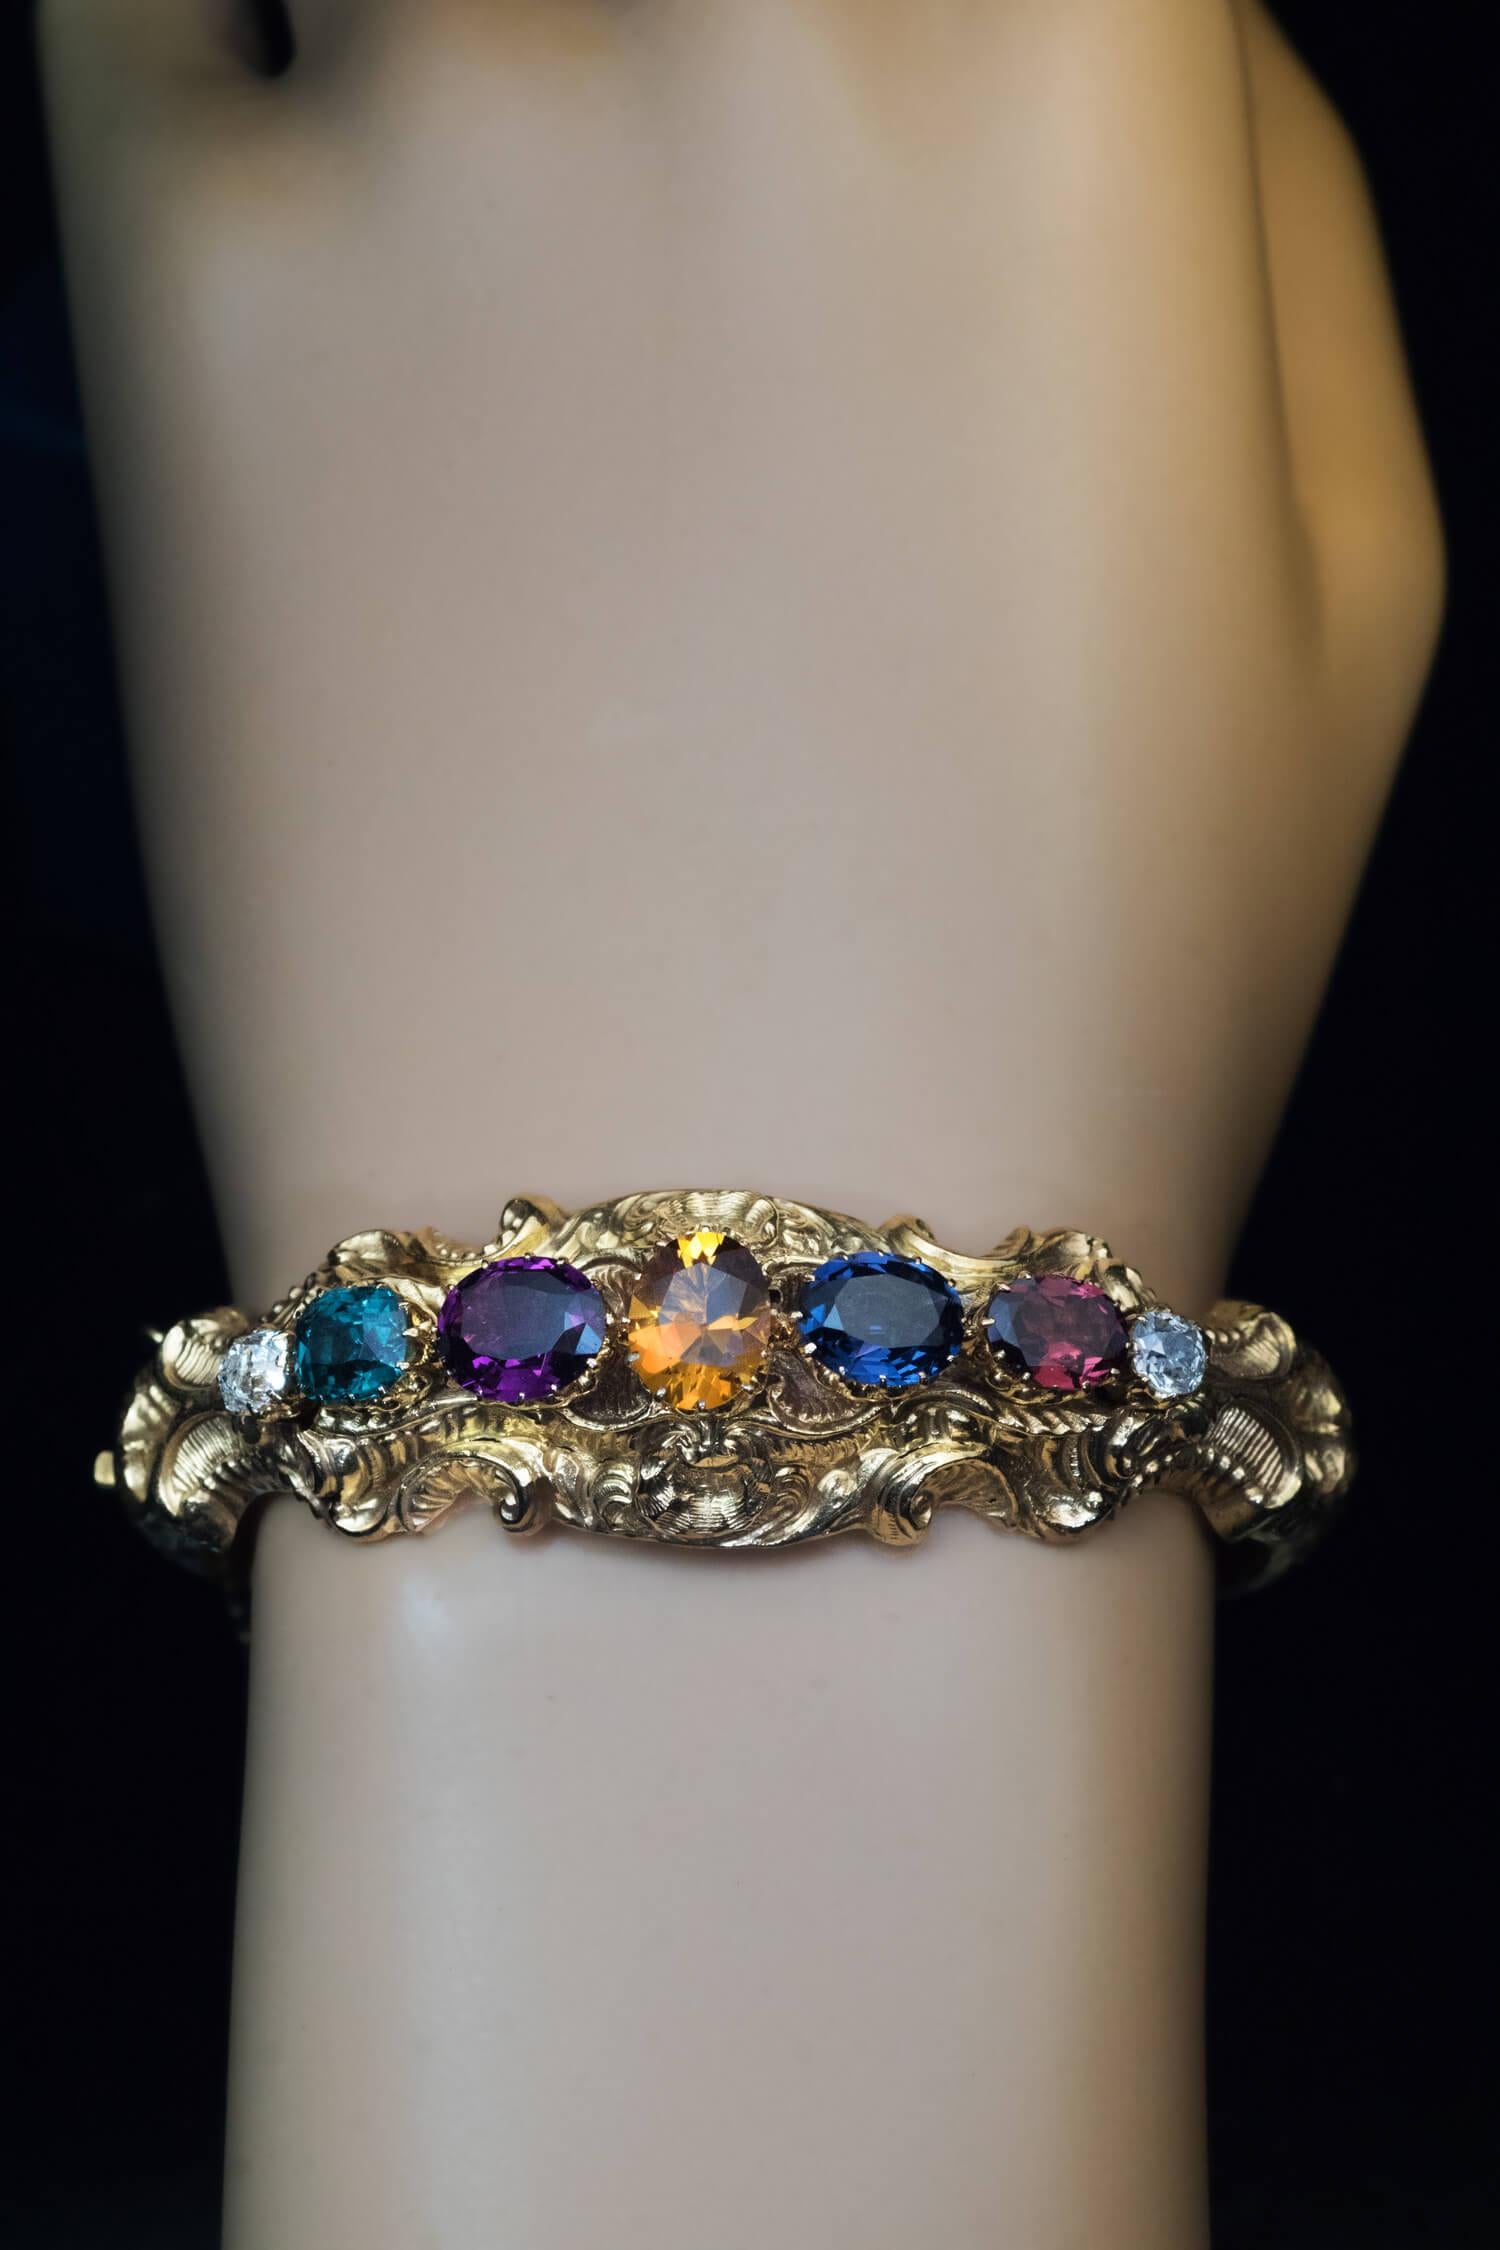 Circa 1850  Le bracelet creux en or jaune 14 carats est orné de rinceaux, de feuillages et de coquillages de style rococo. Le bracelet est serti de deux diamants blancs brillants (couleur E) taille ancienne (environ 0,60 ct au total), d'un spinelle